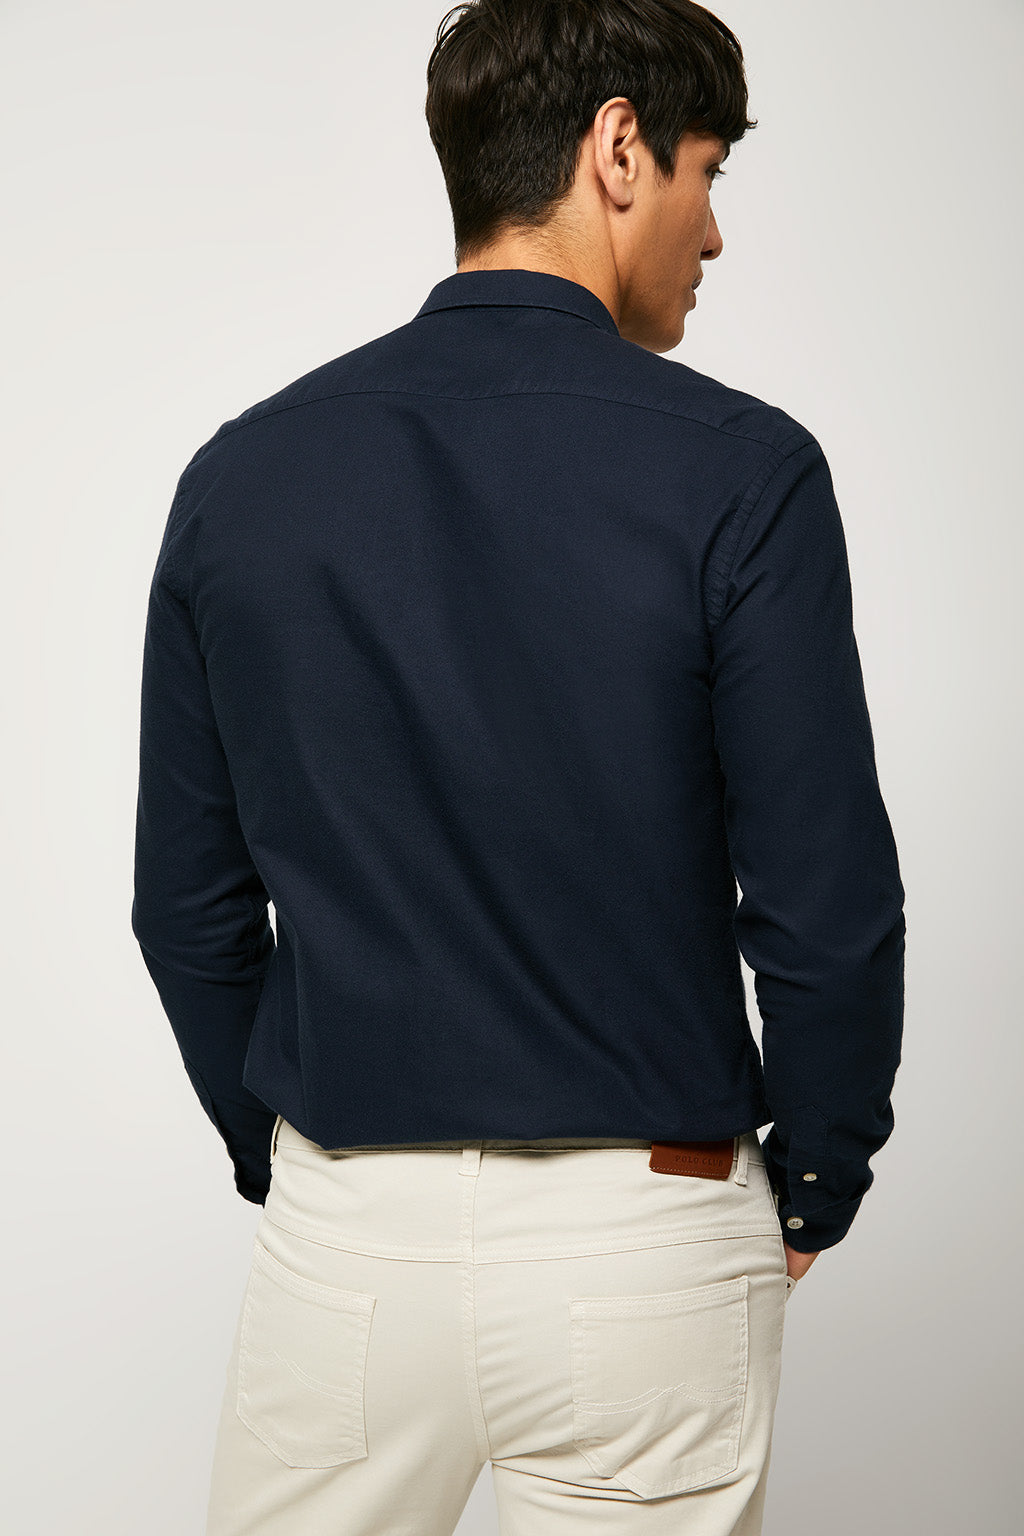 Camisa oxford azul marino con logo bordado | HOMBRE  | POLO CLUB